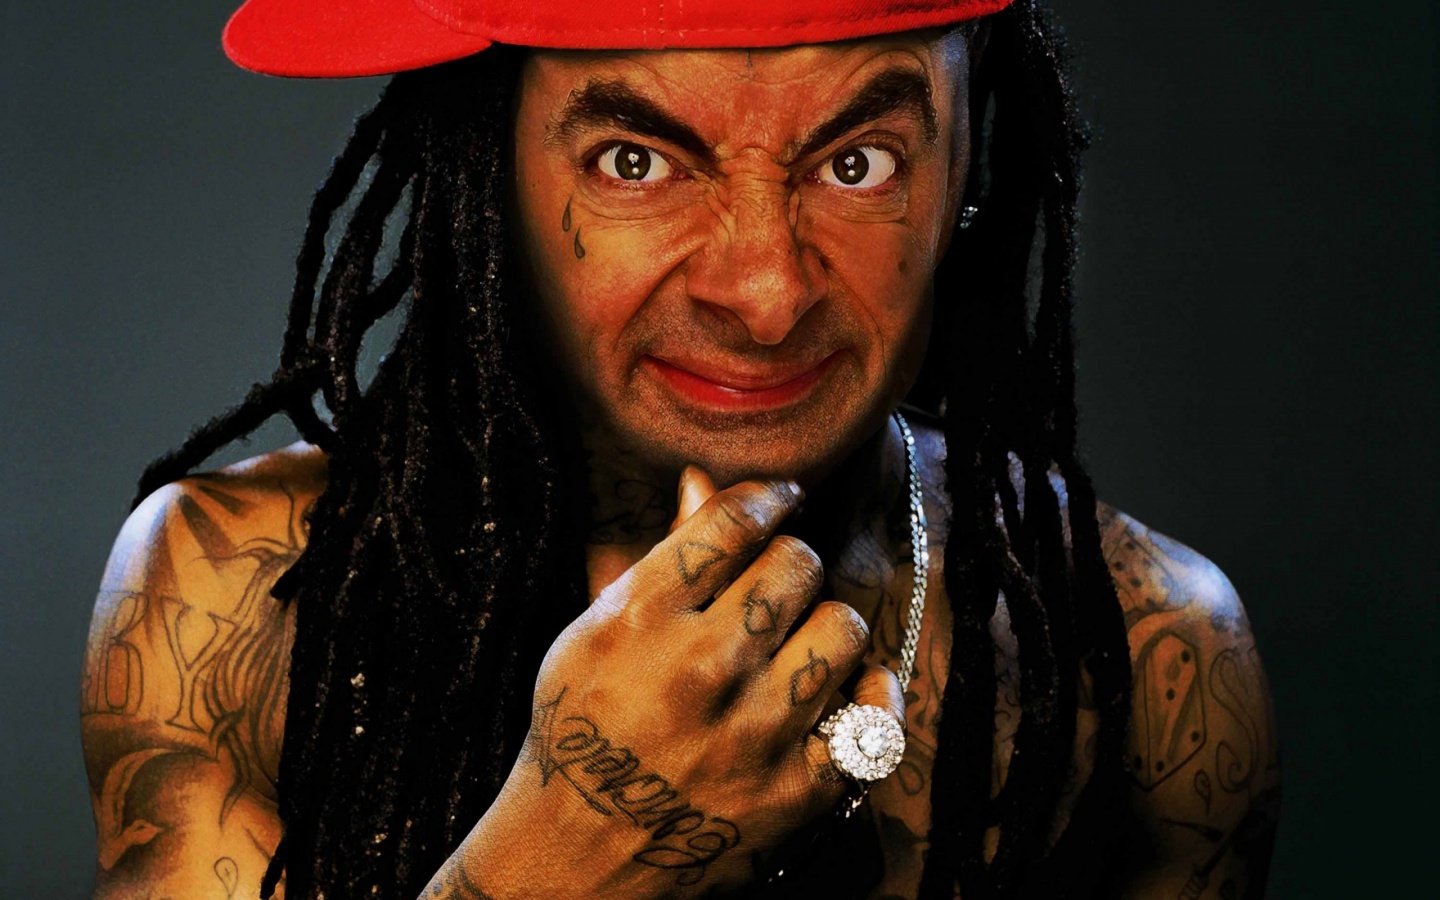 Rowan Atkinson In Lil Wayne Makeup